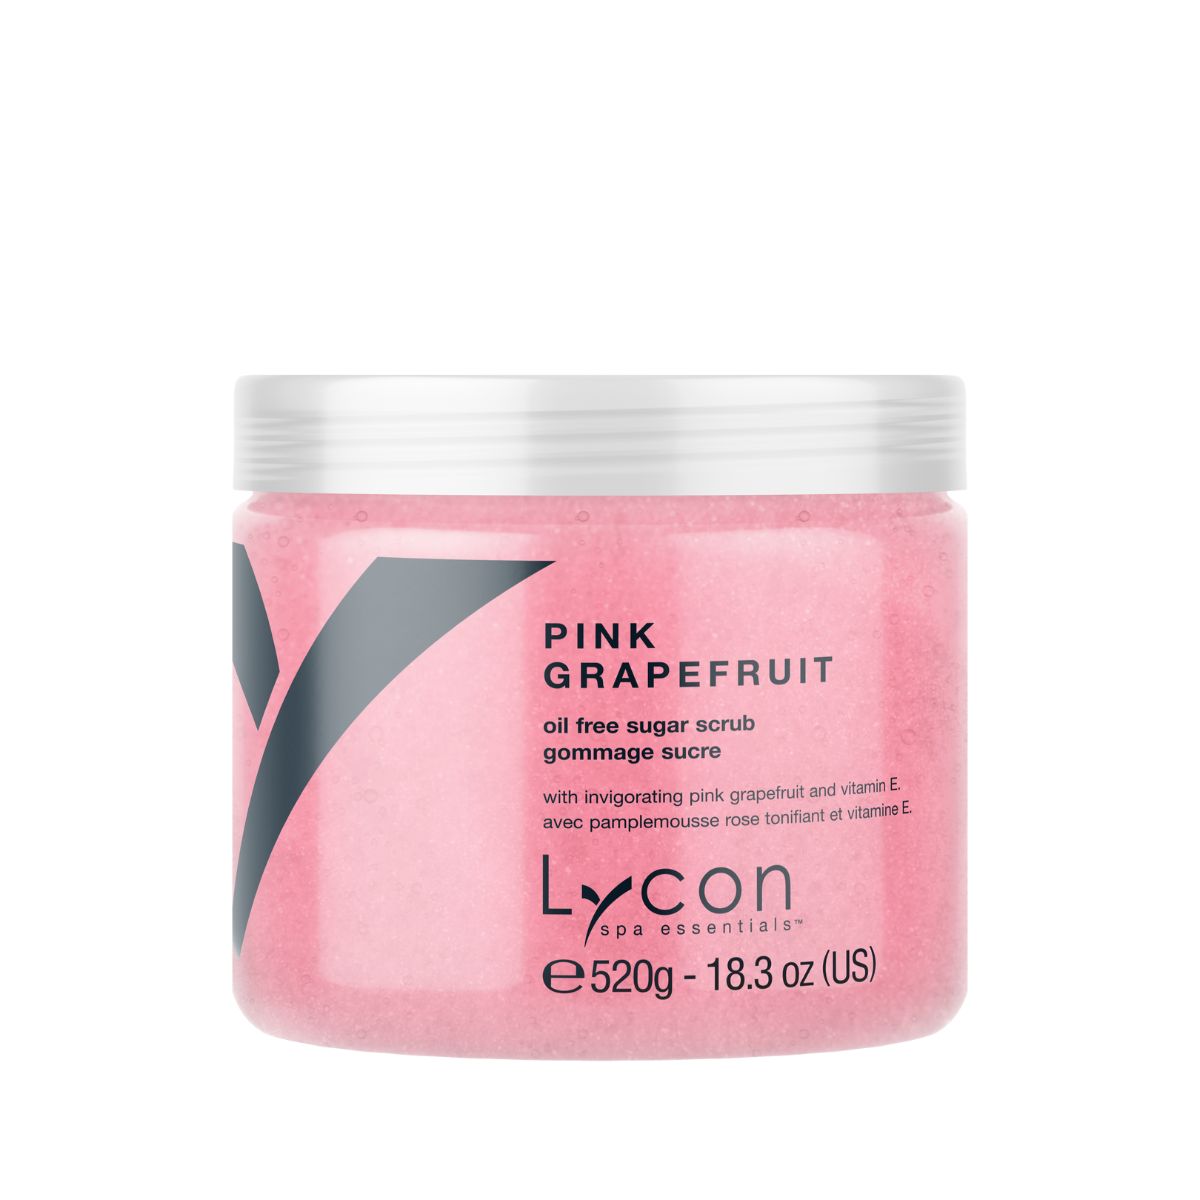 Pink Grapefruit Sugar Scrub - 520g - Retail